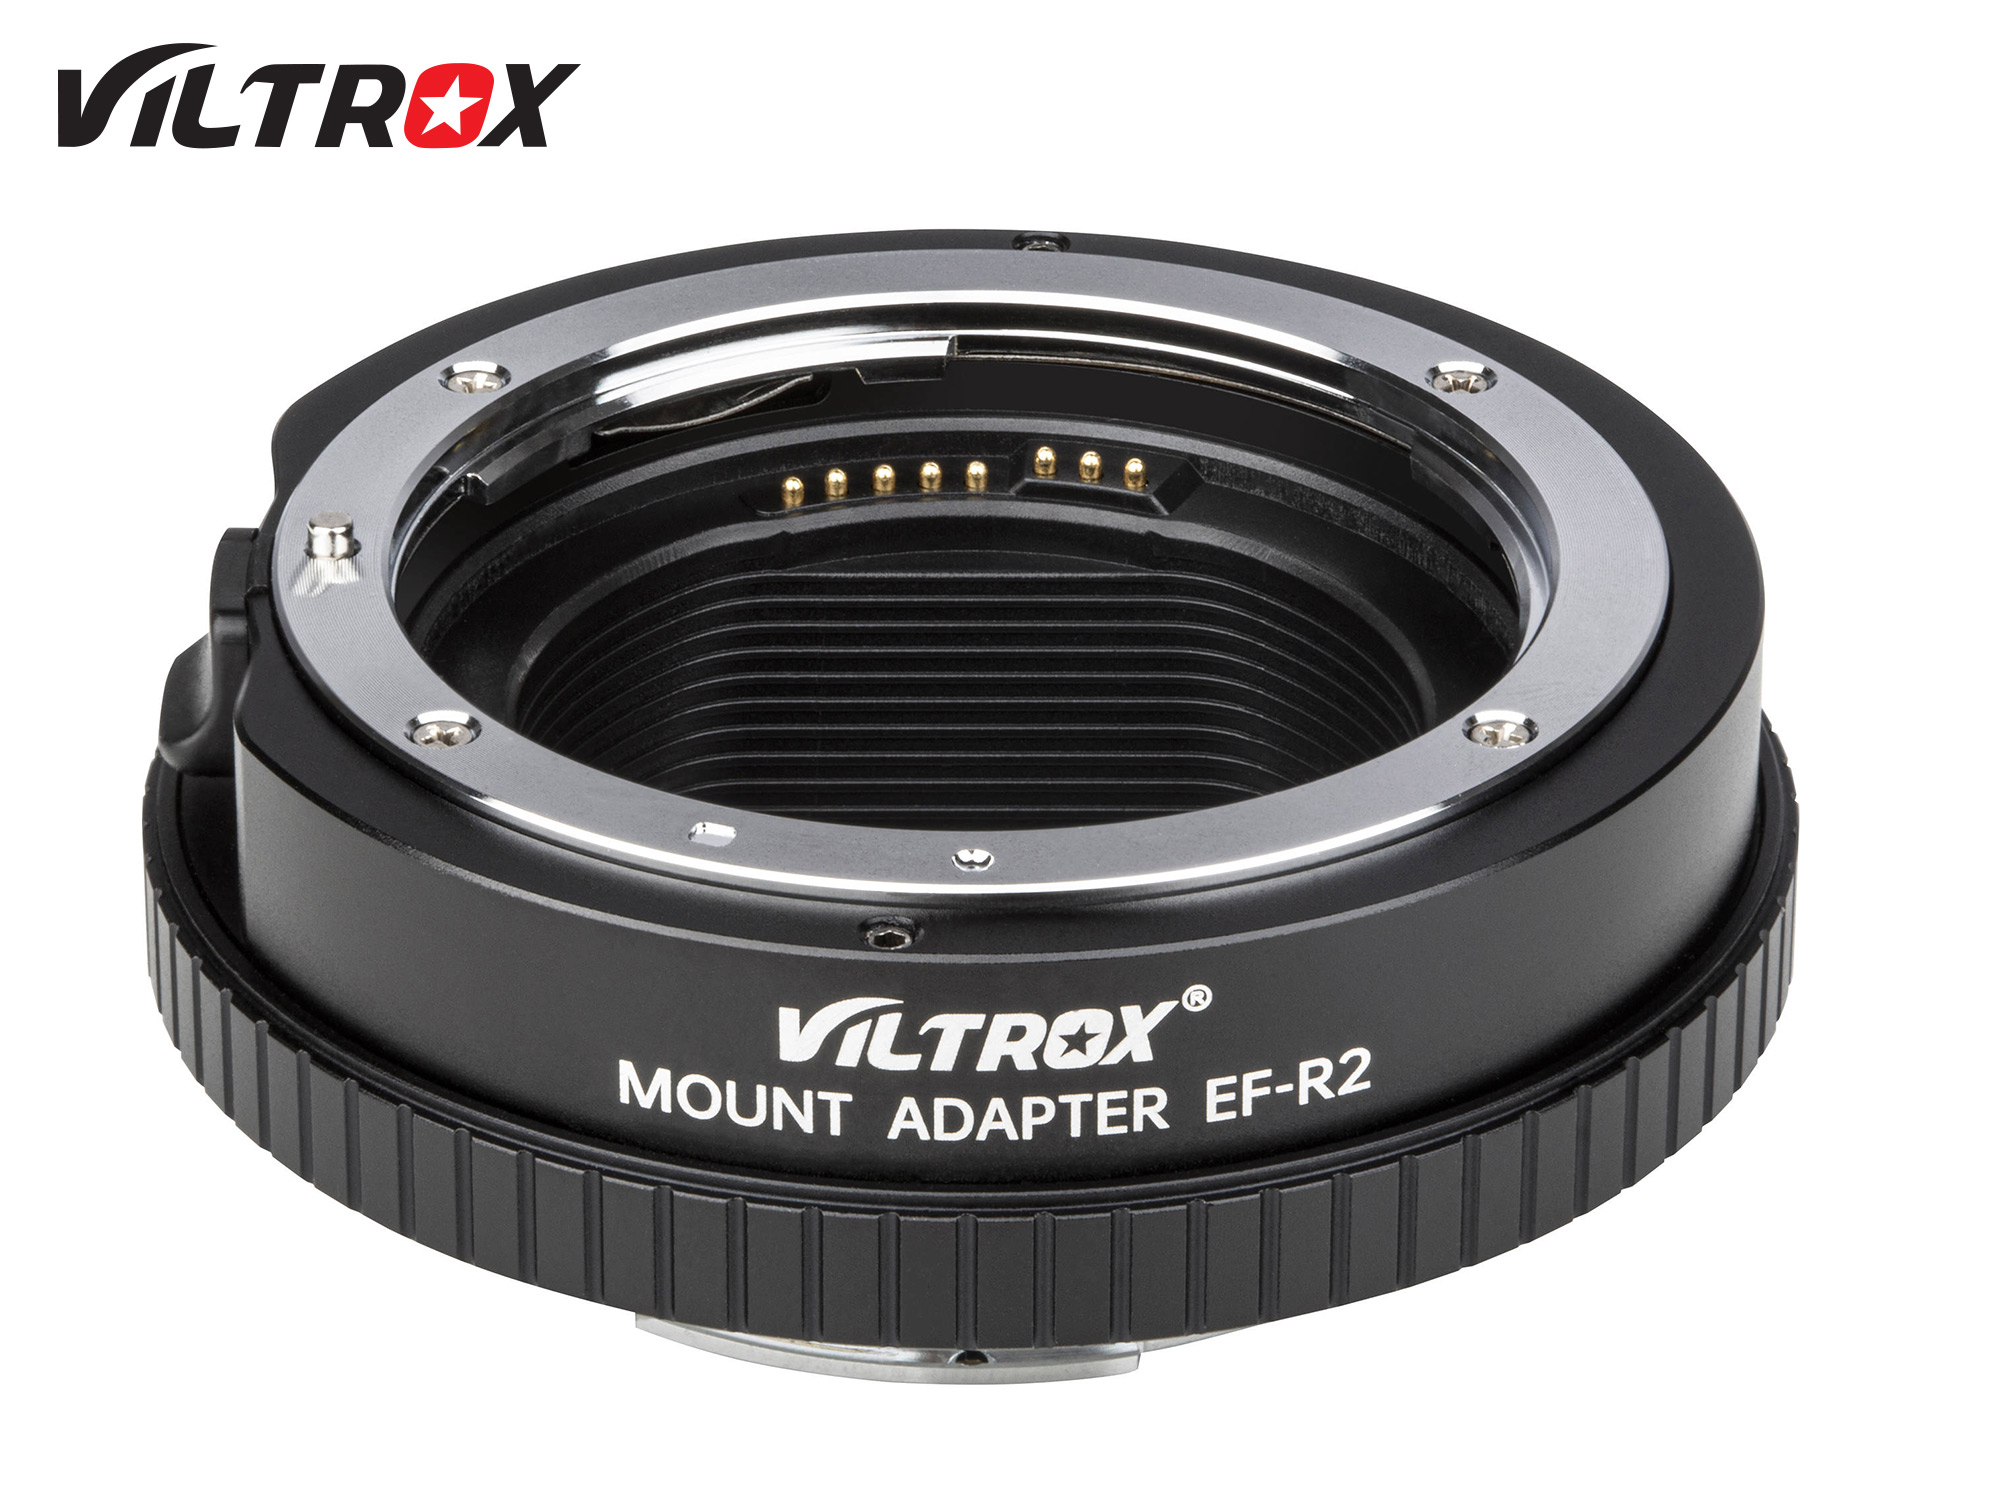 Viltrox EF-R2 EF(EF-S) series lens to EOS R cameras